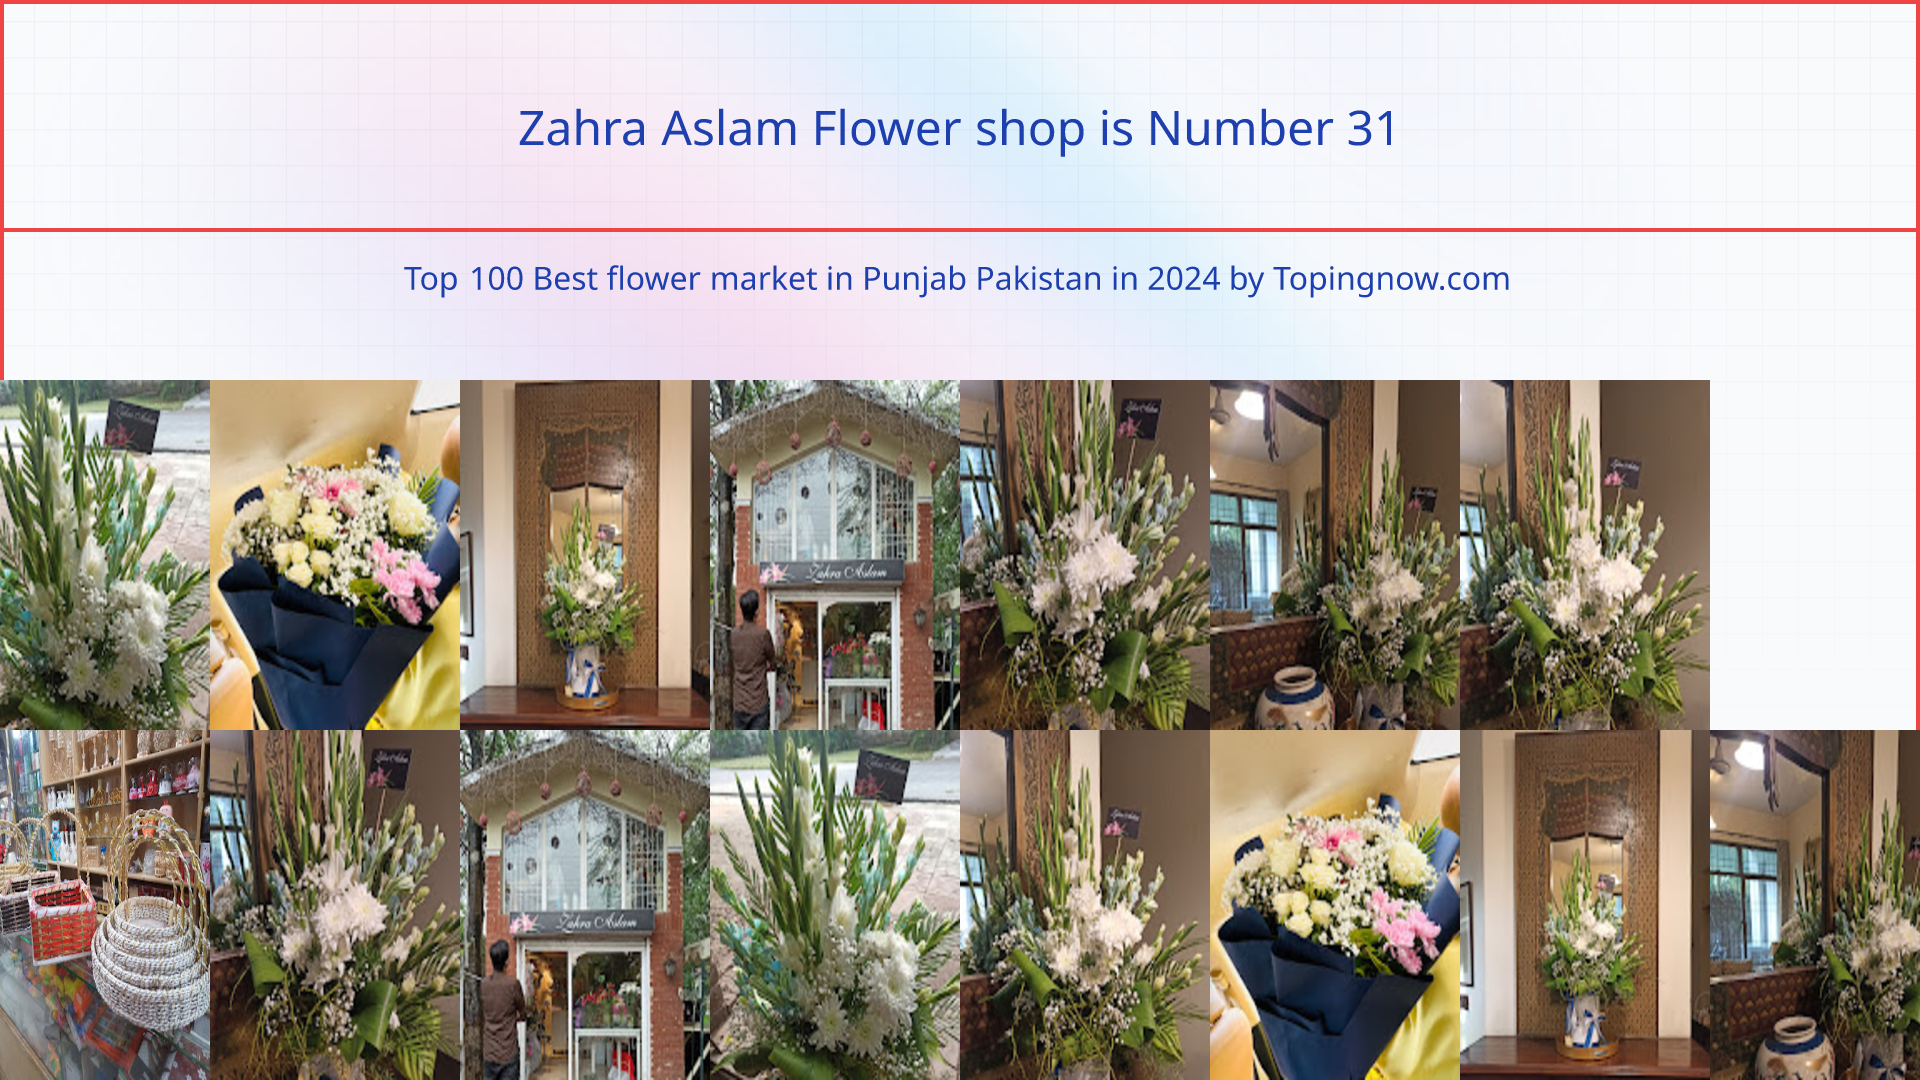 Zahra Aslam Flower shop: Top 100 Best flower market in Punjab Pakistan in 2024